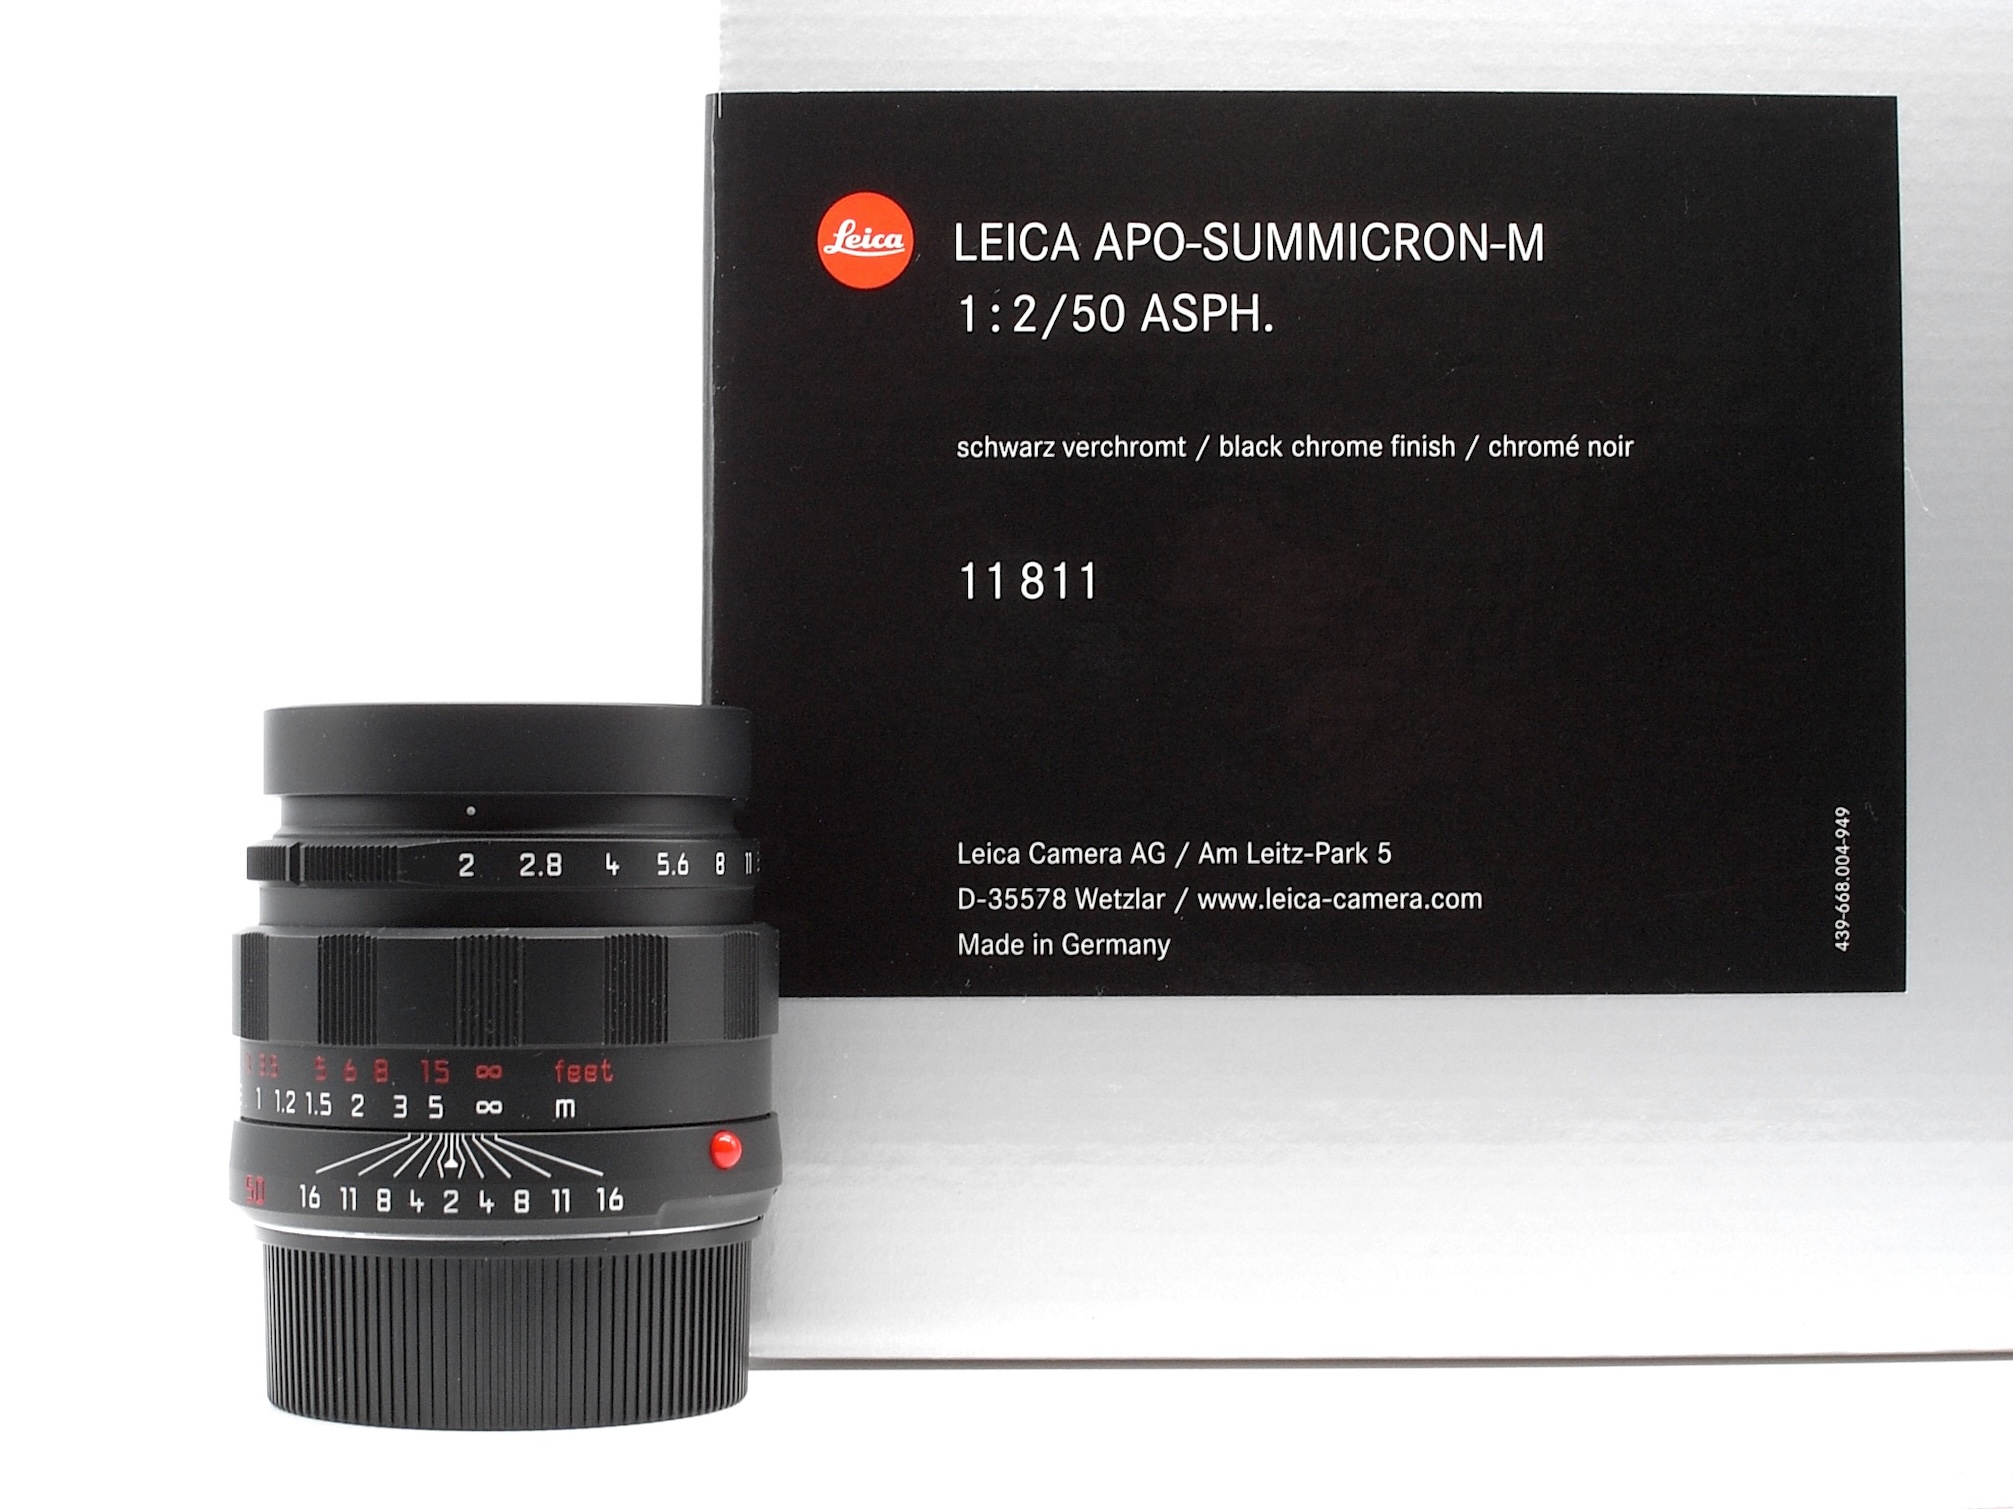 Leica APO-Summicron-M 2,0/50 ASPH. schwarz verchromt